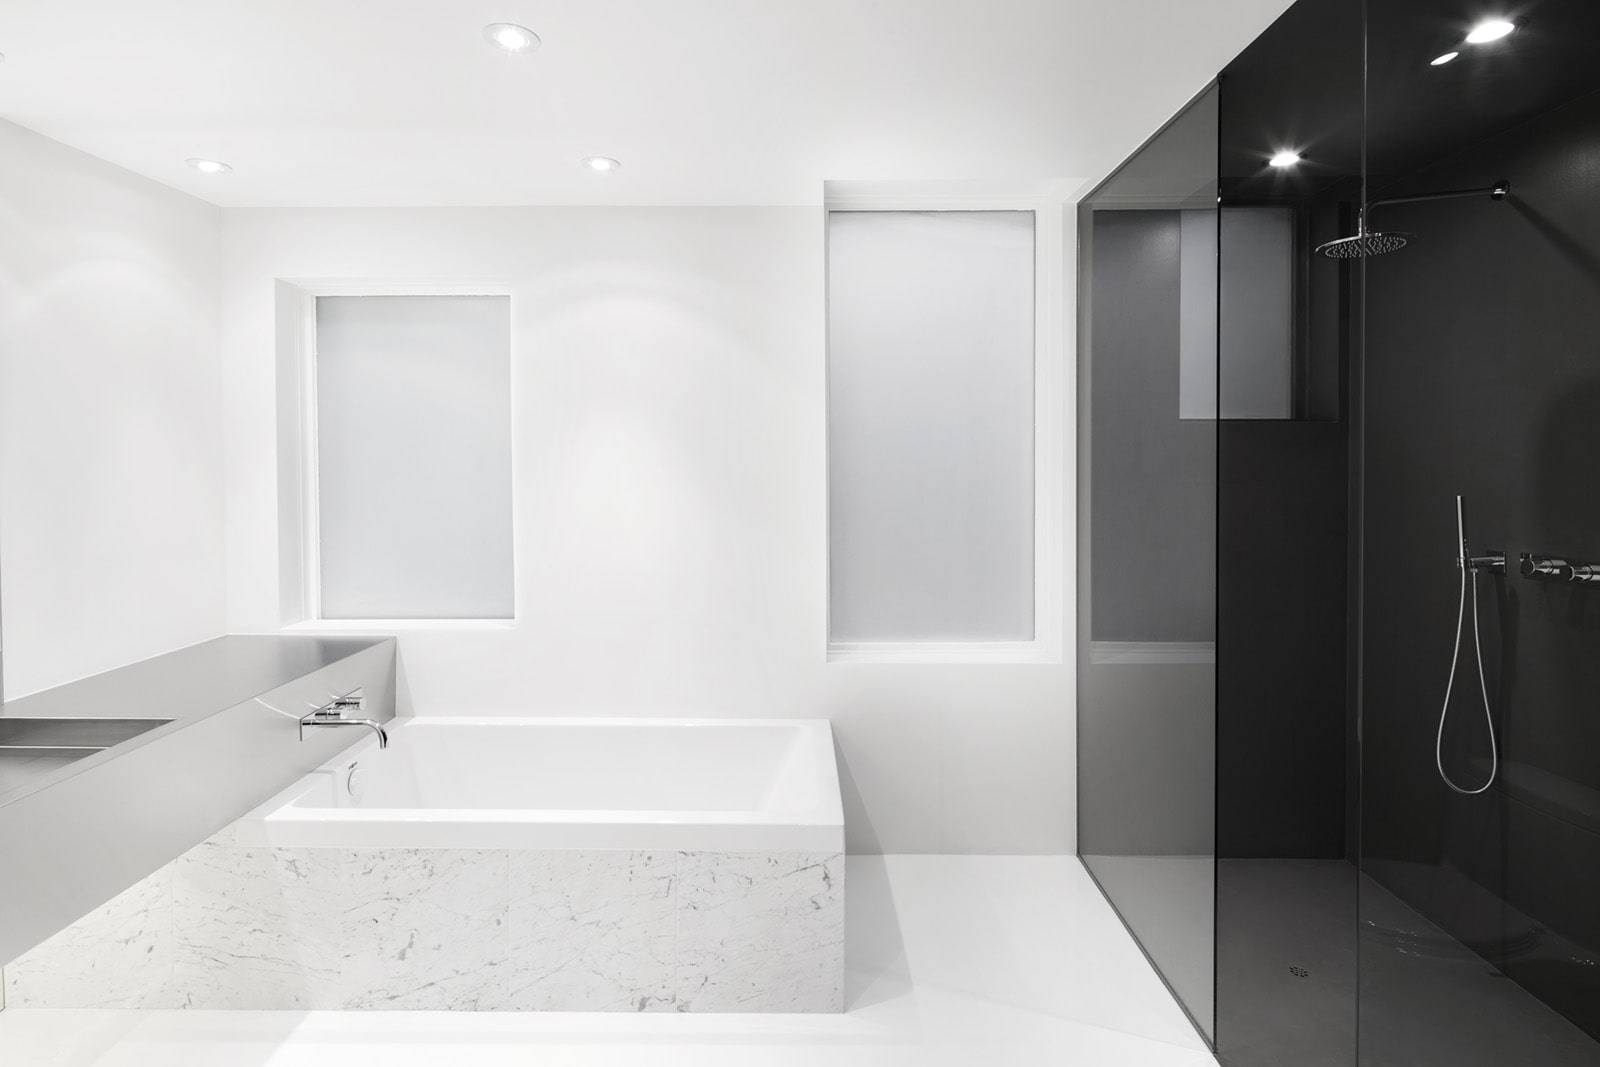 Обустройство ванной в стиле минимализм: варианты декоративной отделки